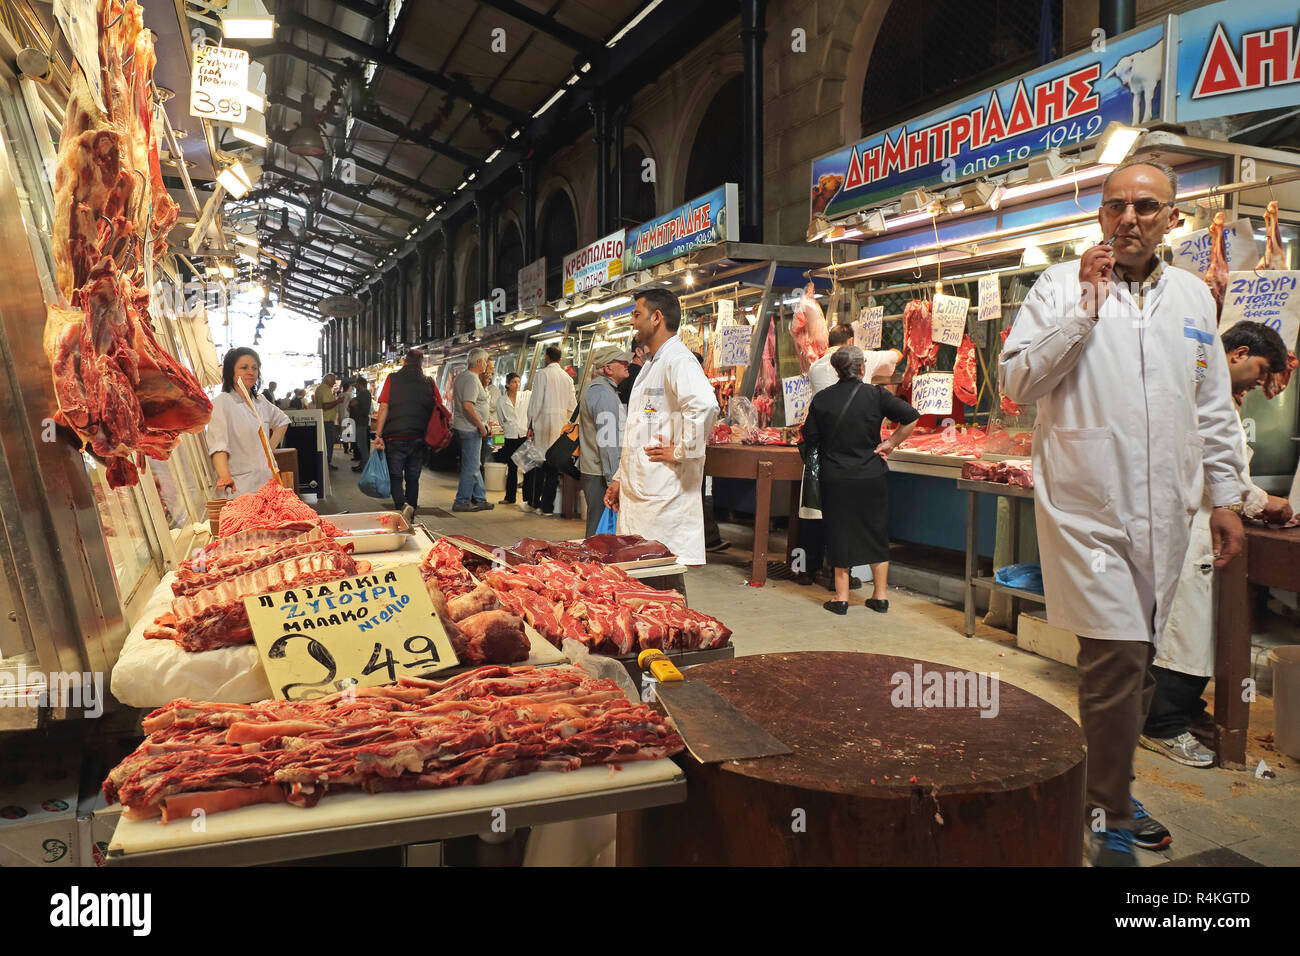 Athen, Griechenland - Mai 05: Metzger und Käufer an Zentralen Fleischmarkt in Athen am 05 Mai, 2015. Frisches Fleisch geht im Markt in Athen, Griechenland. Stockfoto